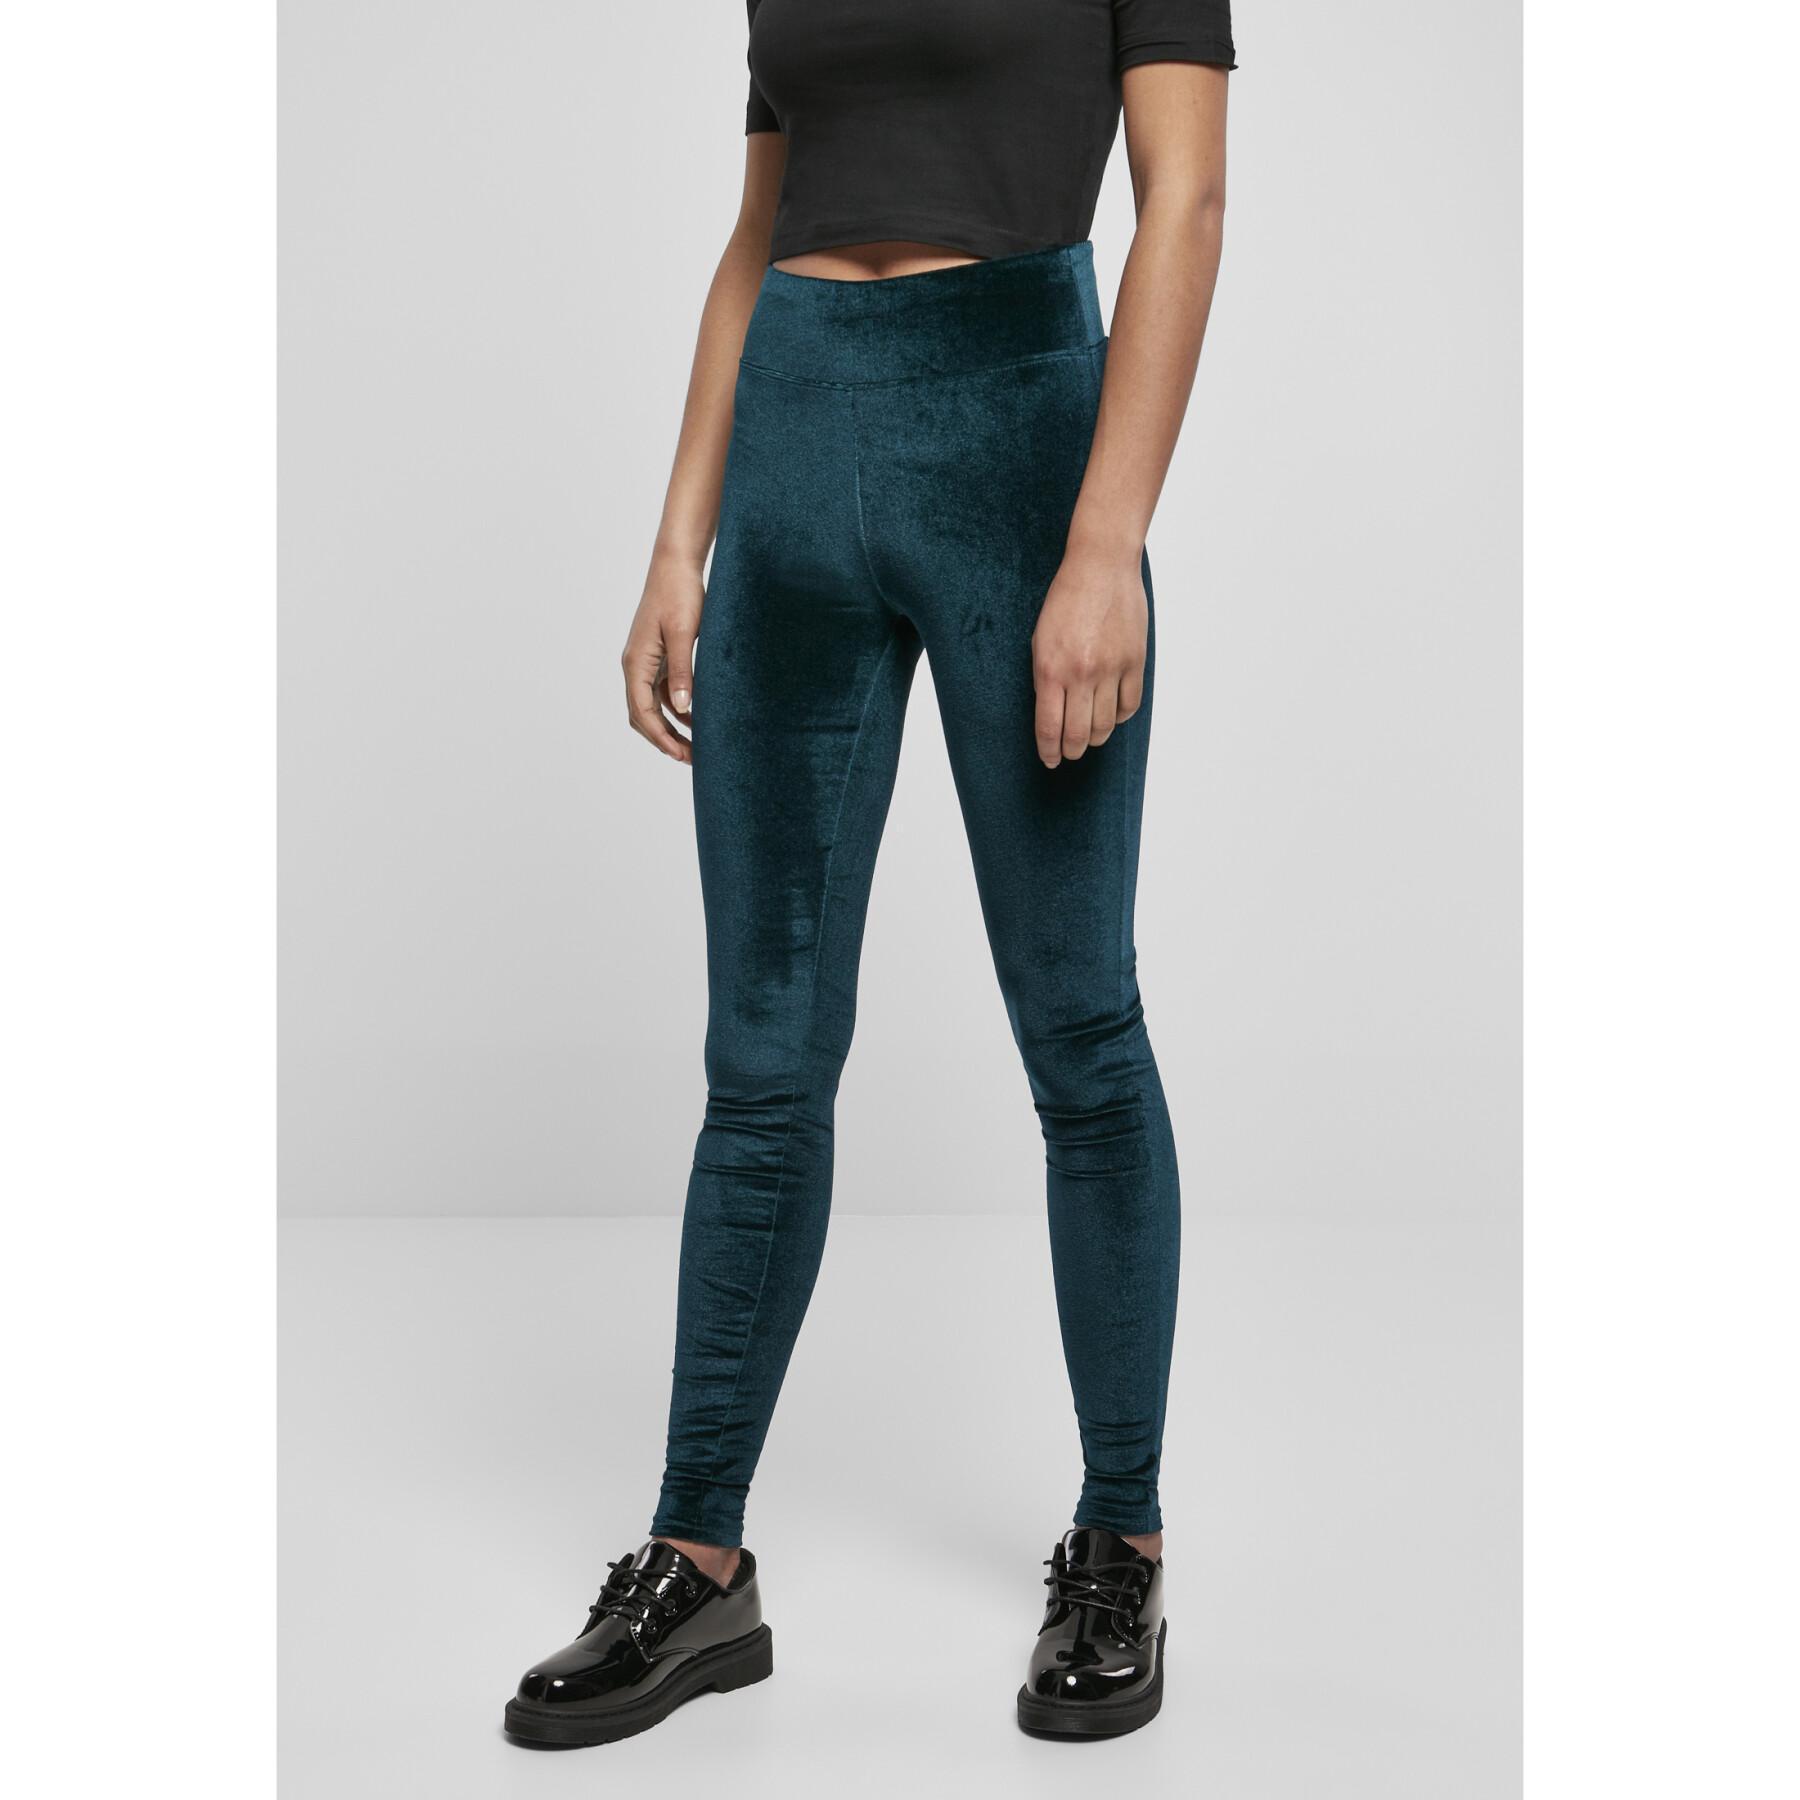 Women's high-waisted leggings Urban Classics velvet(GT)